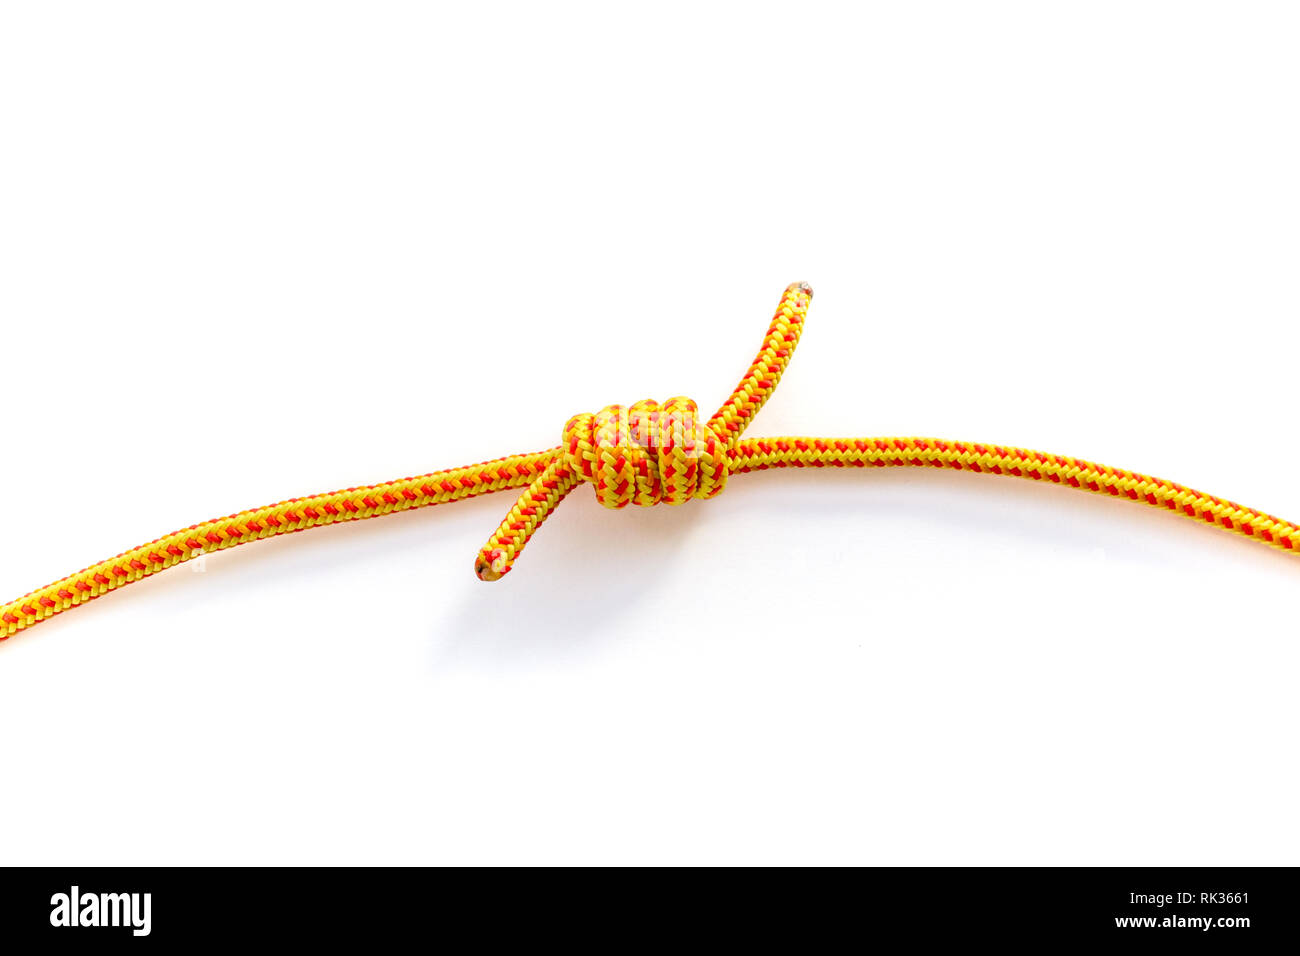 Nahaufnahme von grapevine Knoten Verbinden von zwei Seil Stränge. Makro  einer doppelten Fisherman's Bend mit 5 mm gelb Kletterseil getan  Stockfotografie - Alamy